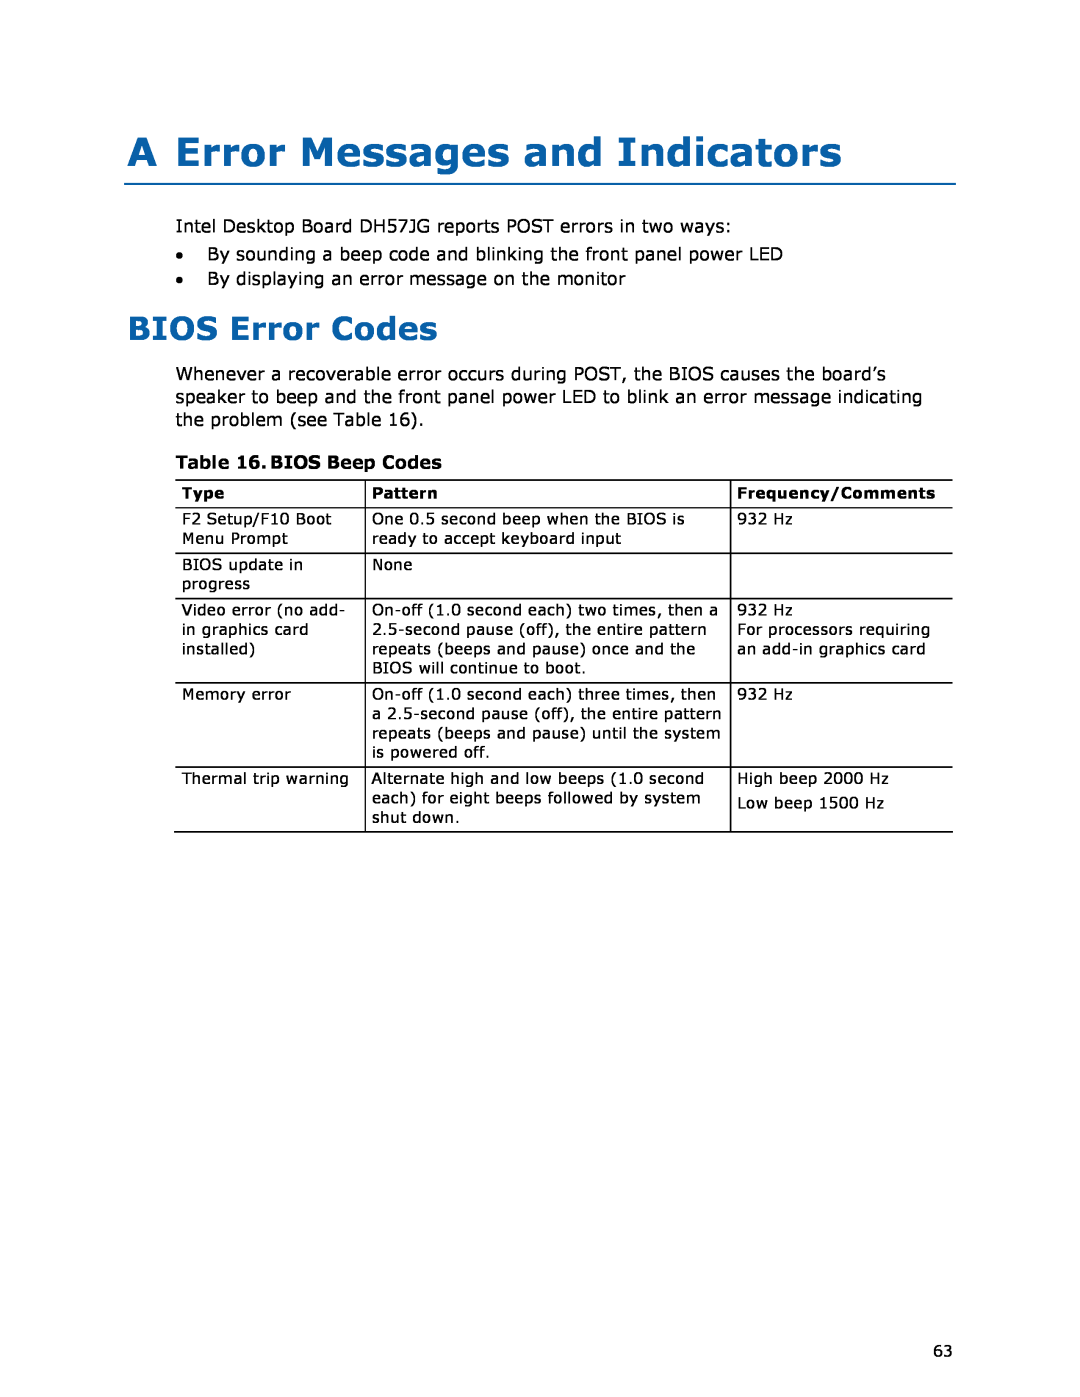 Intel BLKDH57JG manual A Error Messages and Indicators, BIOS Error Codes, BIOS Beep Codes 